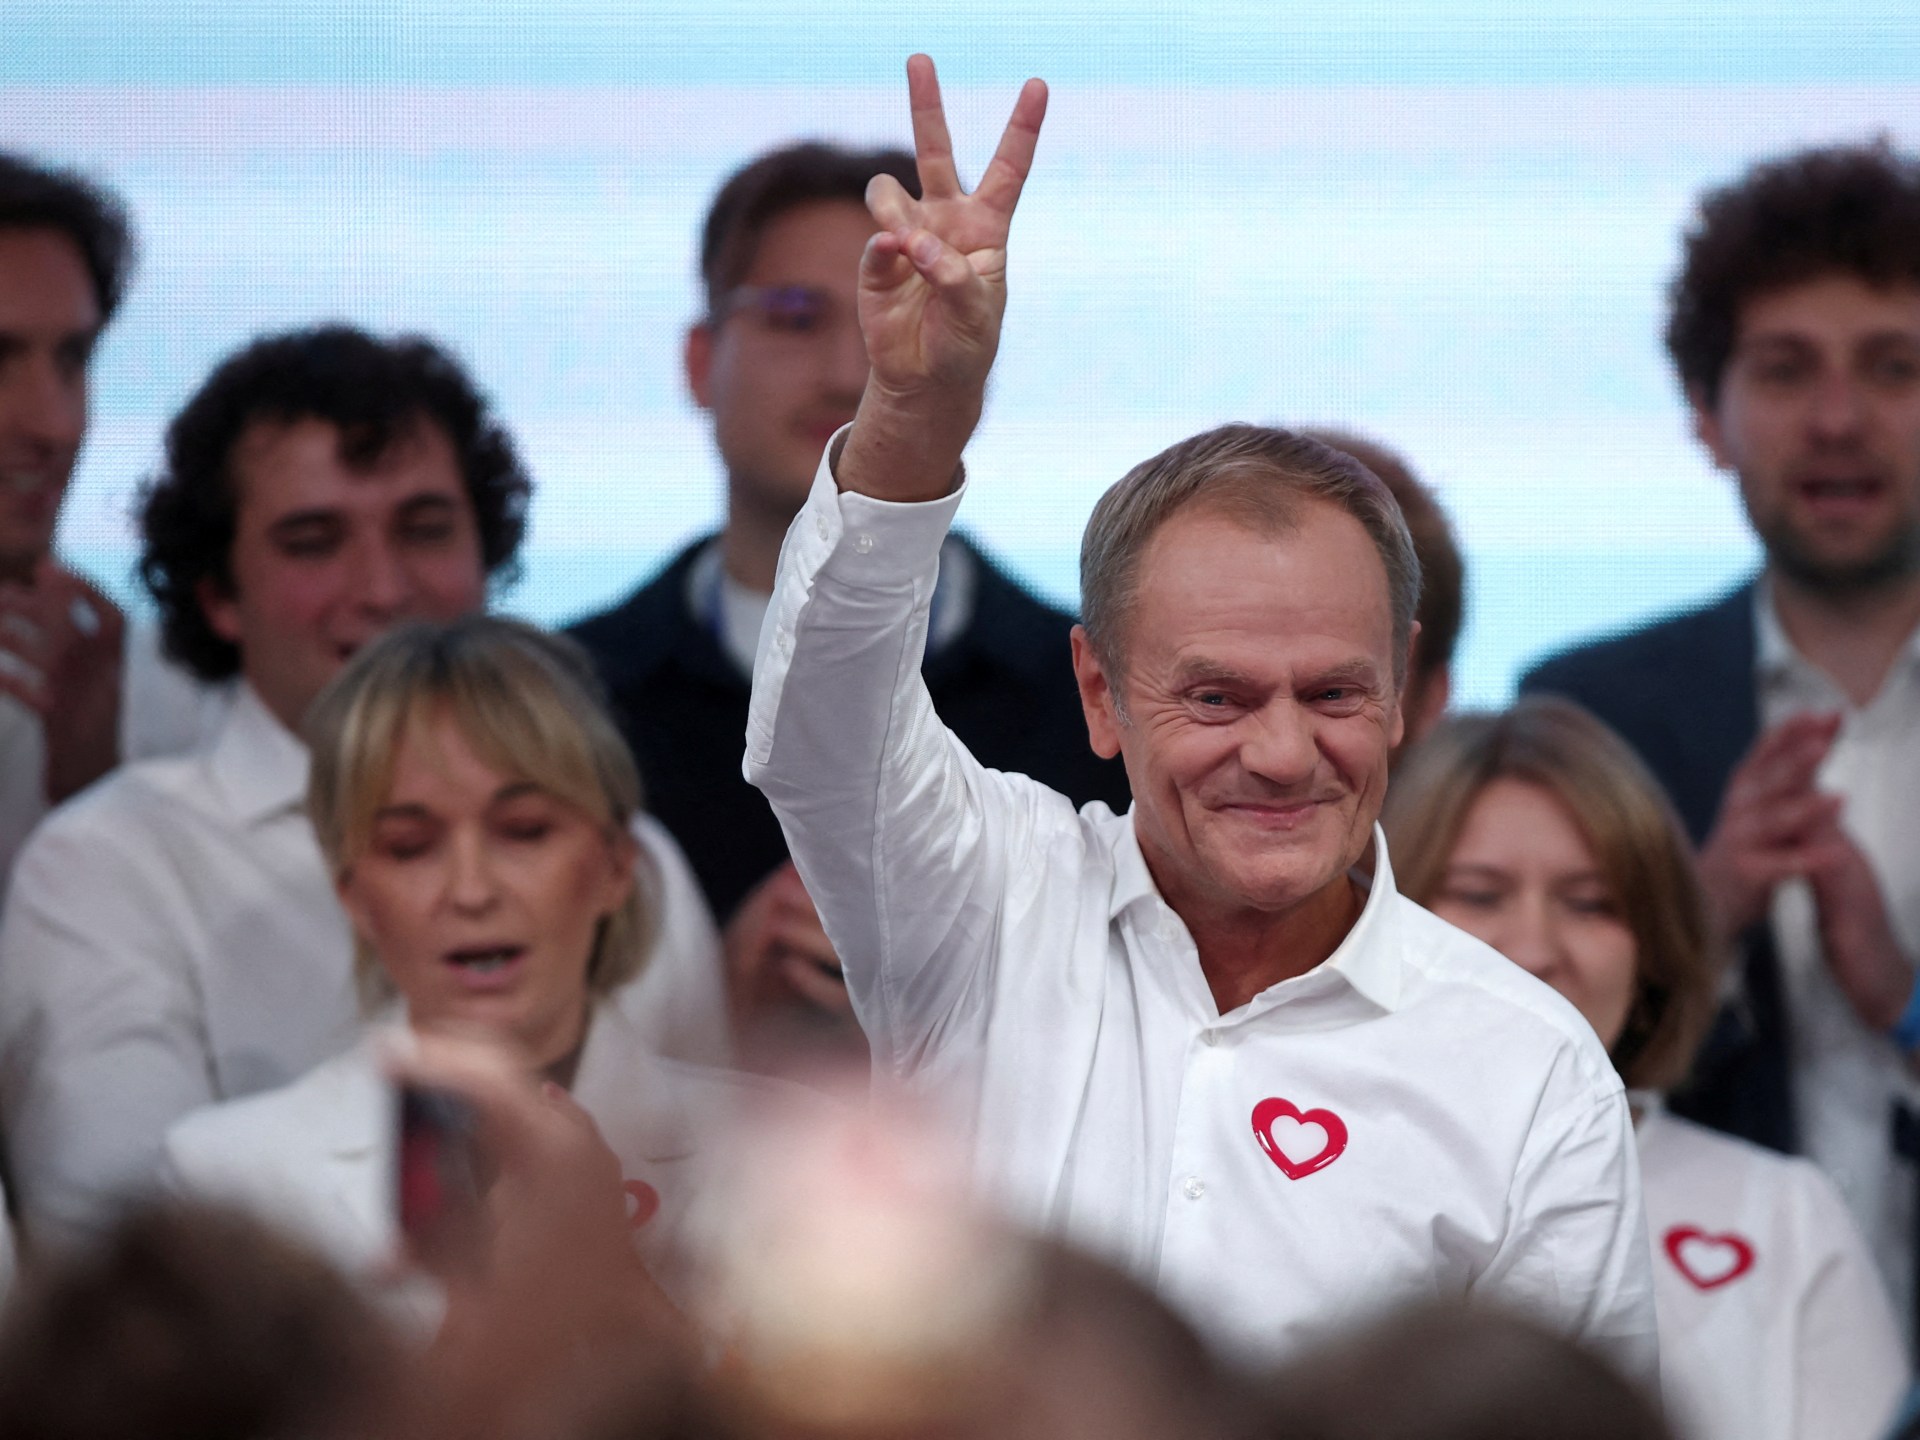 „Nowa Era”: Tusk świętuje sondaże wskazujące na zwycięstwo opozycji w Polsce |  Wiadomości UE